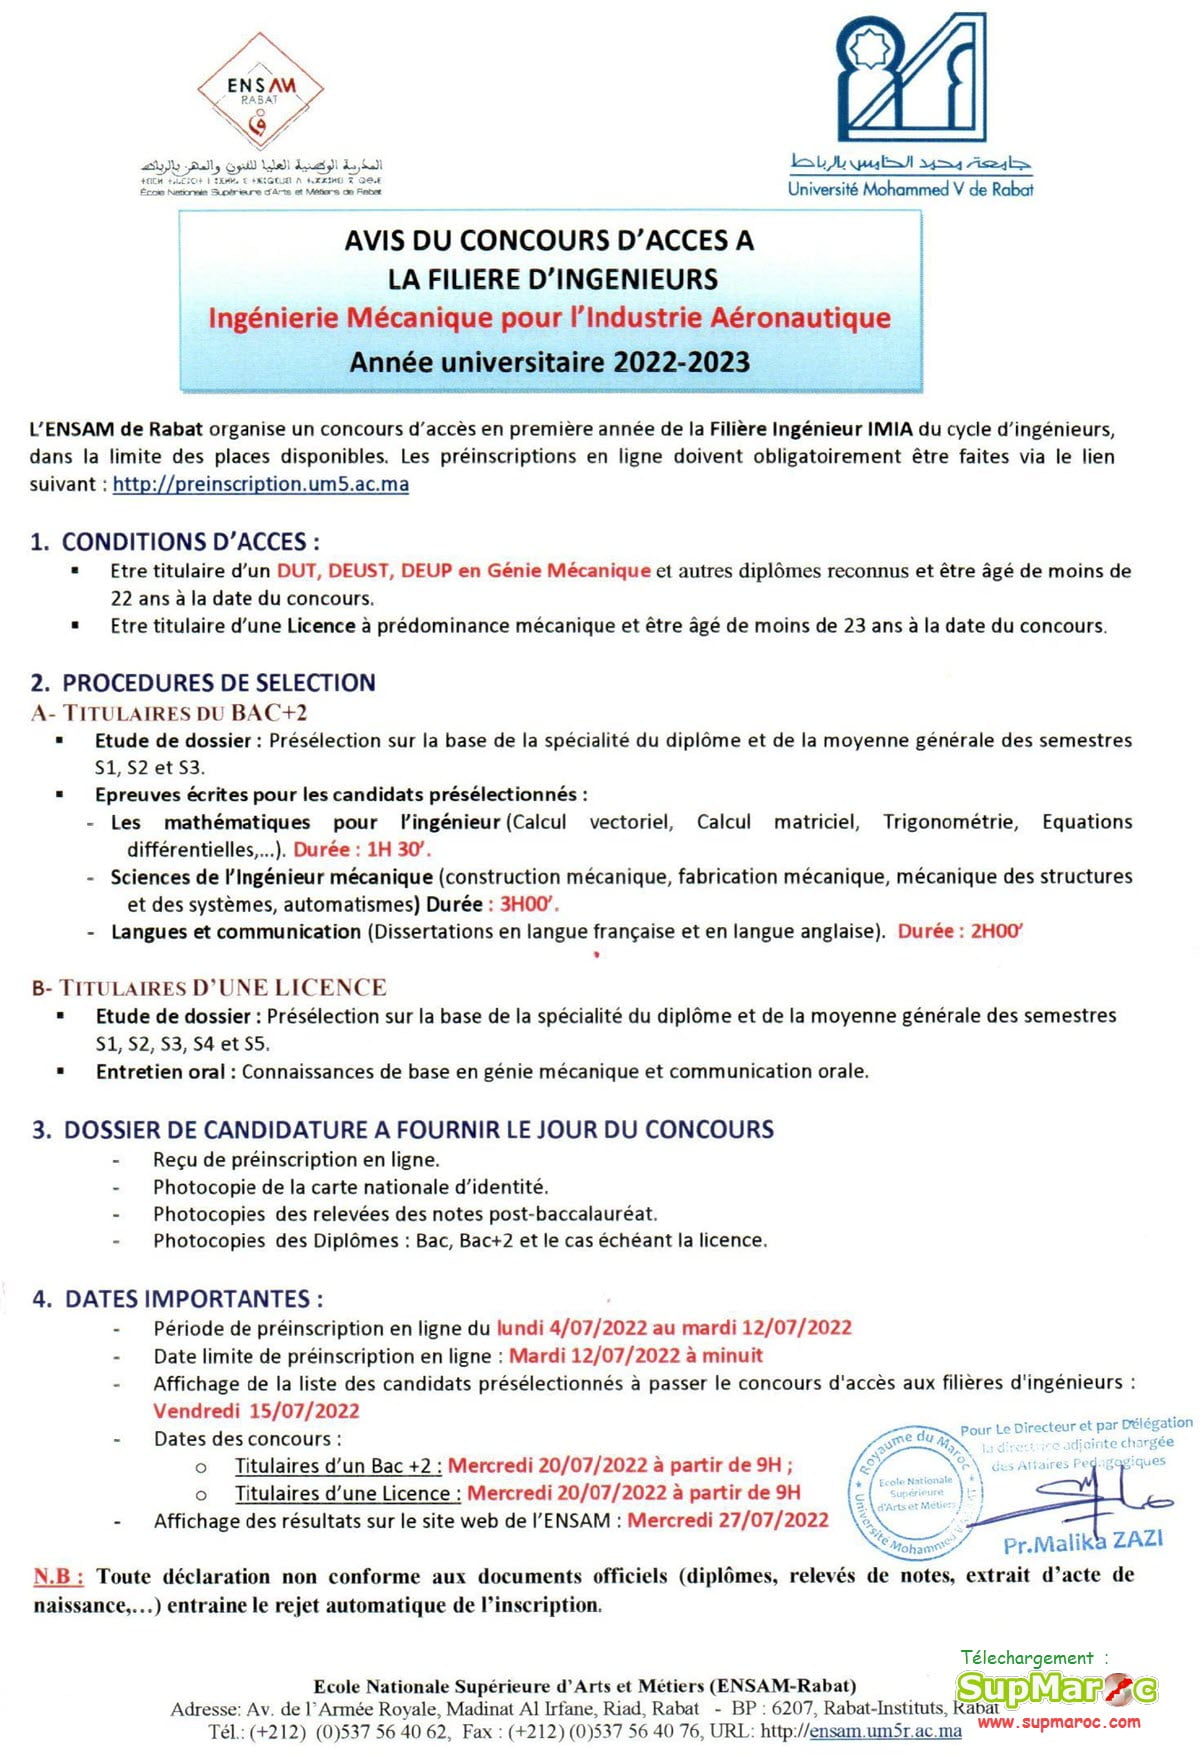 ENSAM Rabat concours 1ere année ingénieure 2022 2023